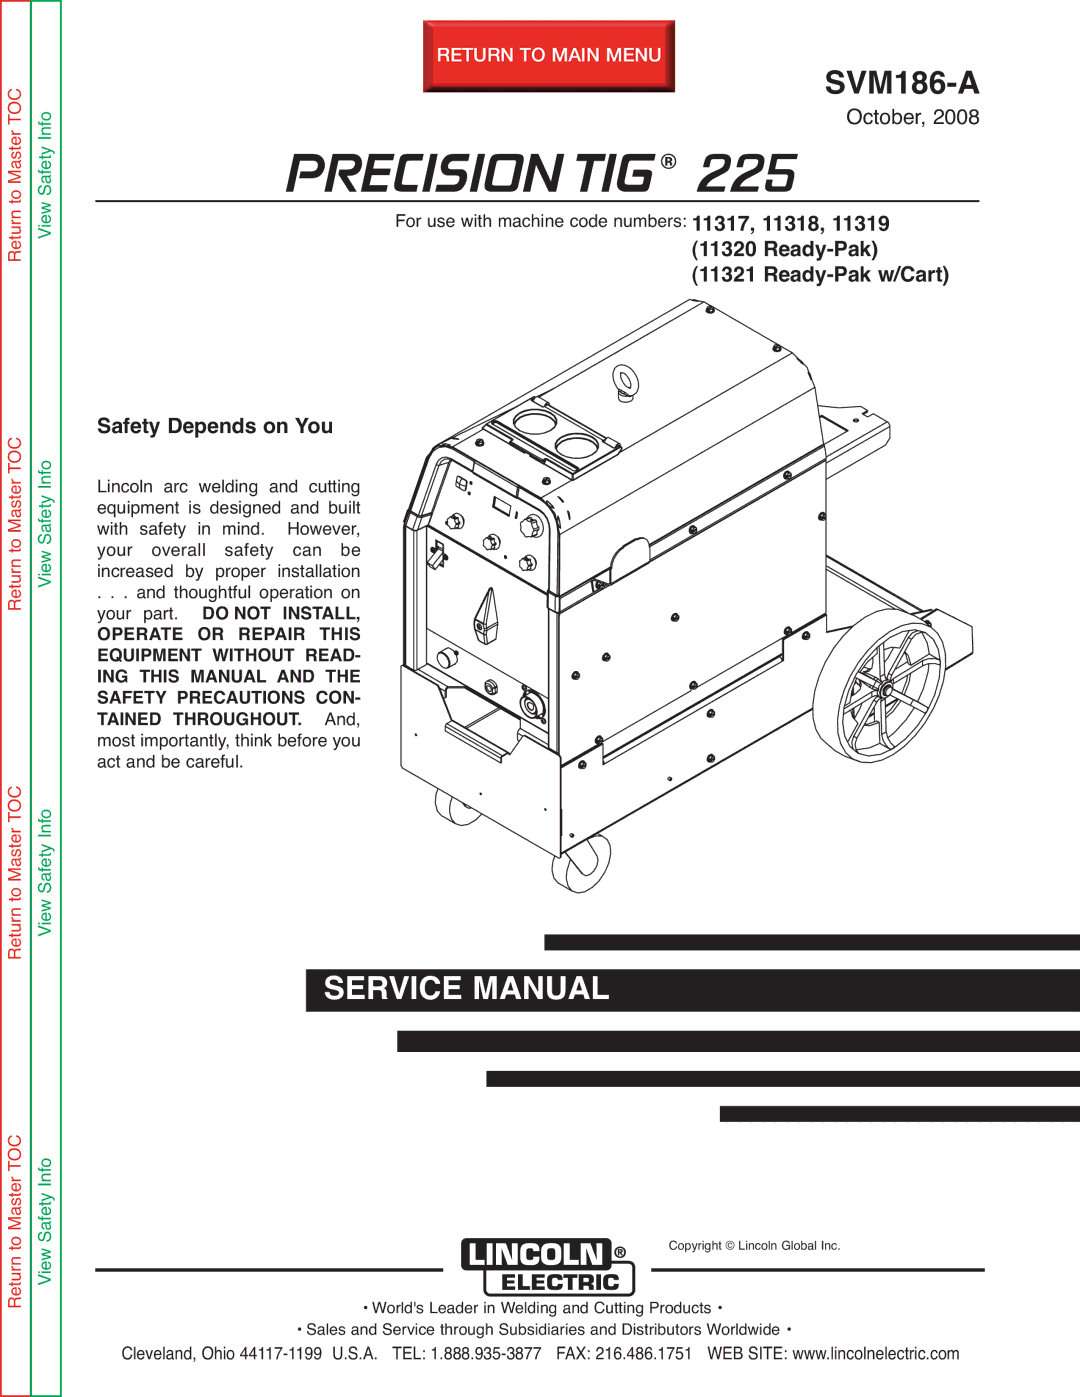 Lincoln Electric SVM186-A service manual Precision TIG 